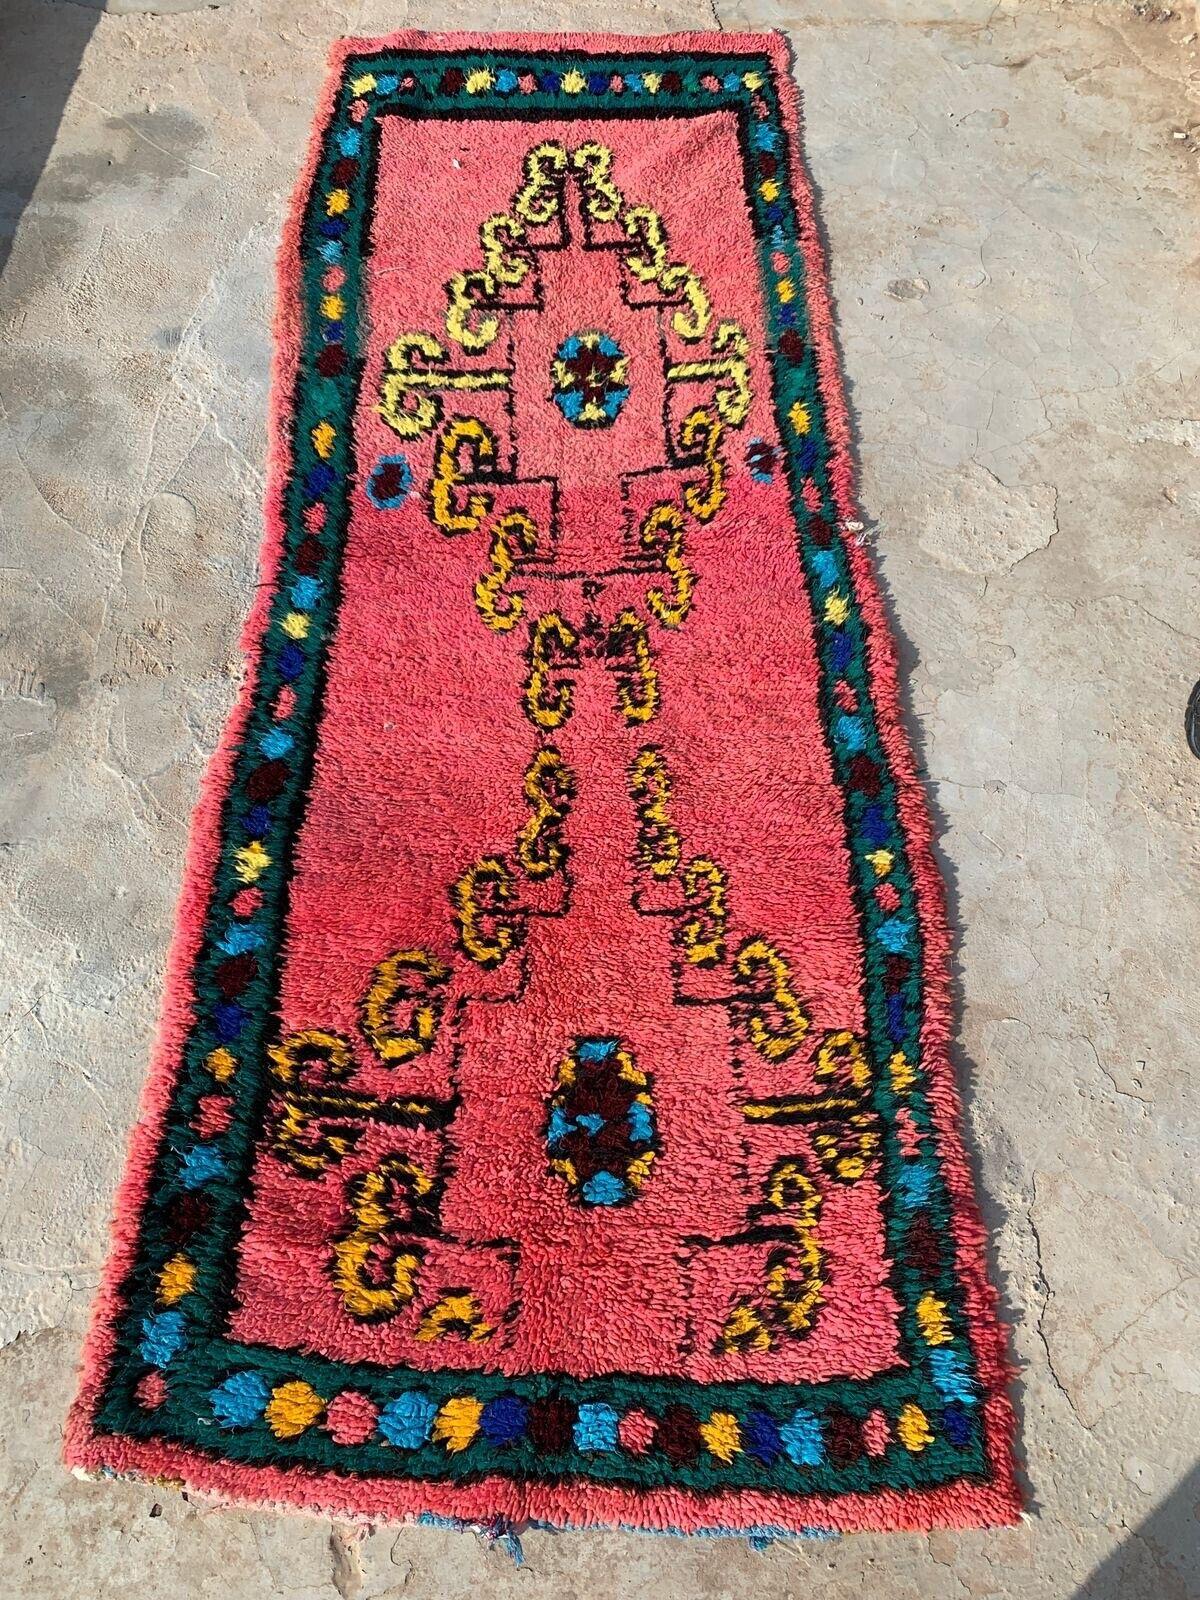 Wir stellen unseren handgefertigten, modernen marokkanischen Berberteppich ORA vor, ein lebendiges und zeitloses Stück, das die Essenz des marokkanischen Designs wunderbar einfängt.

Spezifikationen:

Größe: 3' x 8.4'
Epoche: 2010er Jahre
Zustand: